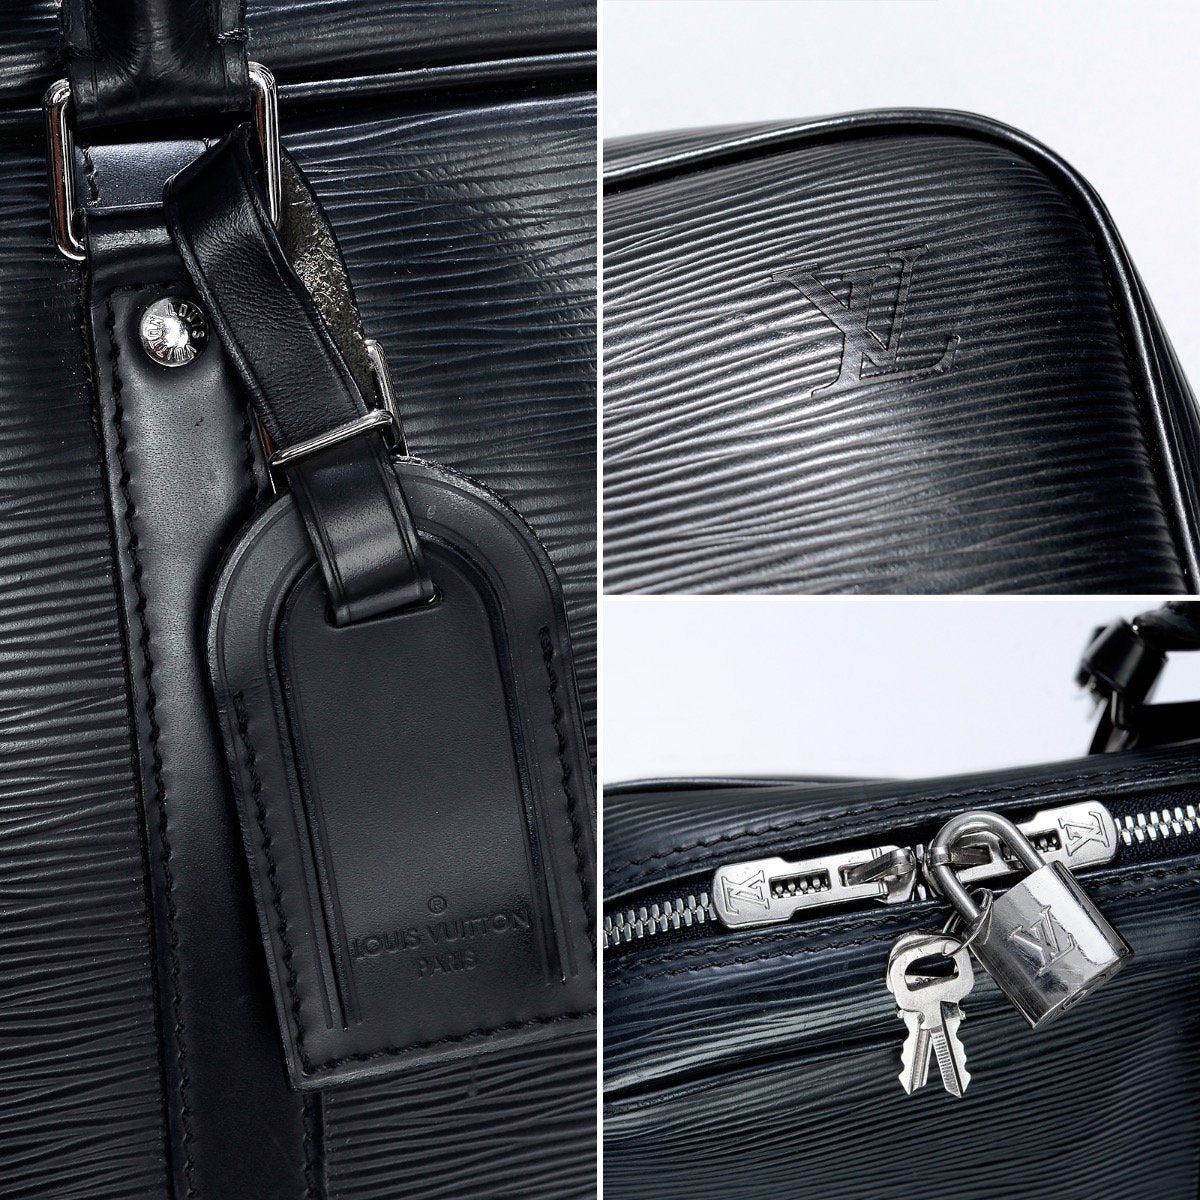 Louis Vuitton Porte-Documents Jour Bag Epi Leather Black 229114159